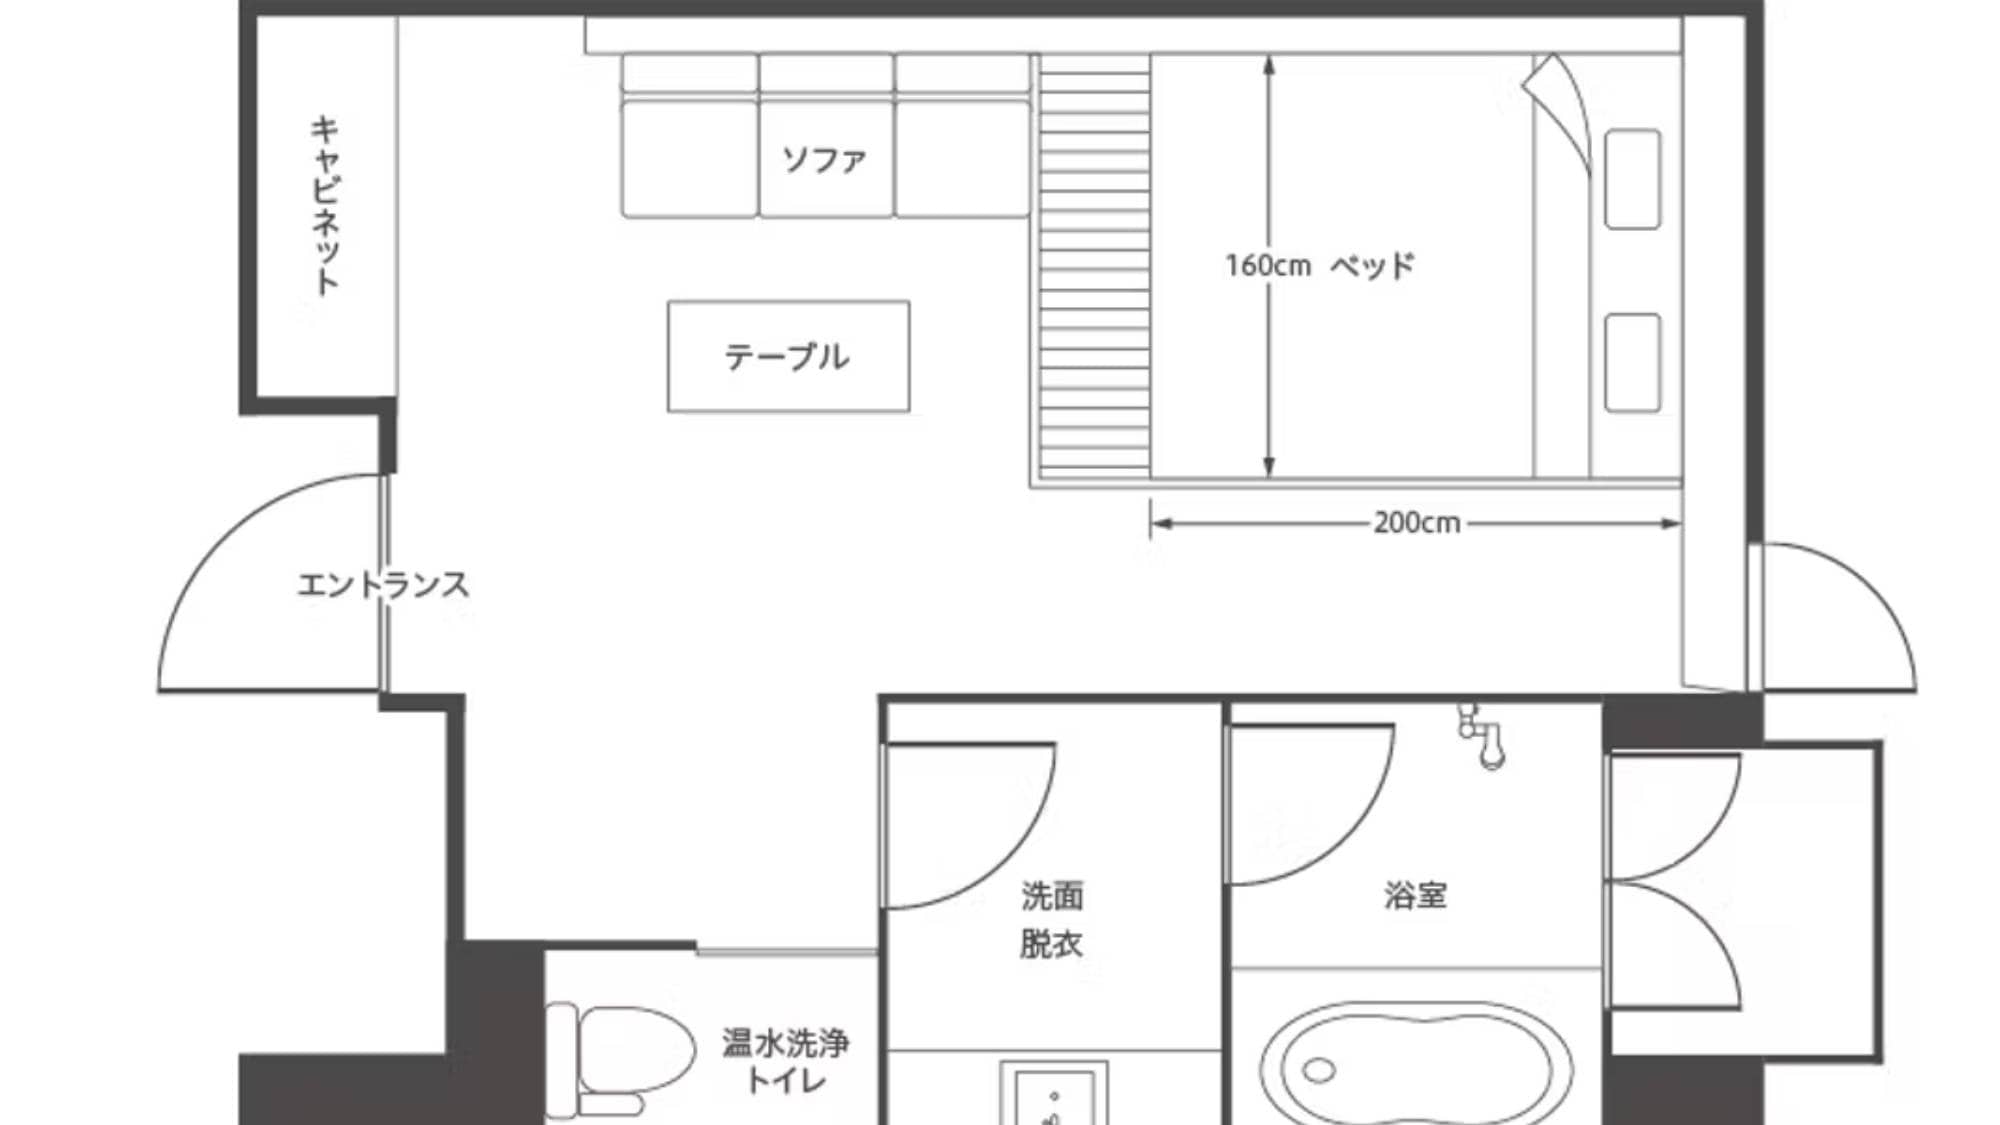 Double floor plan